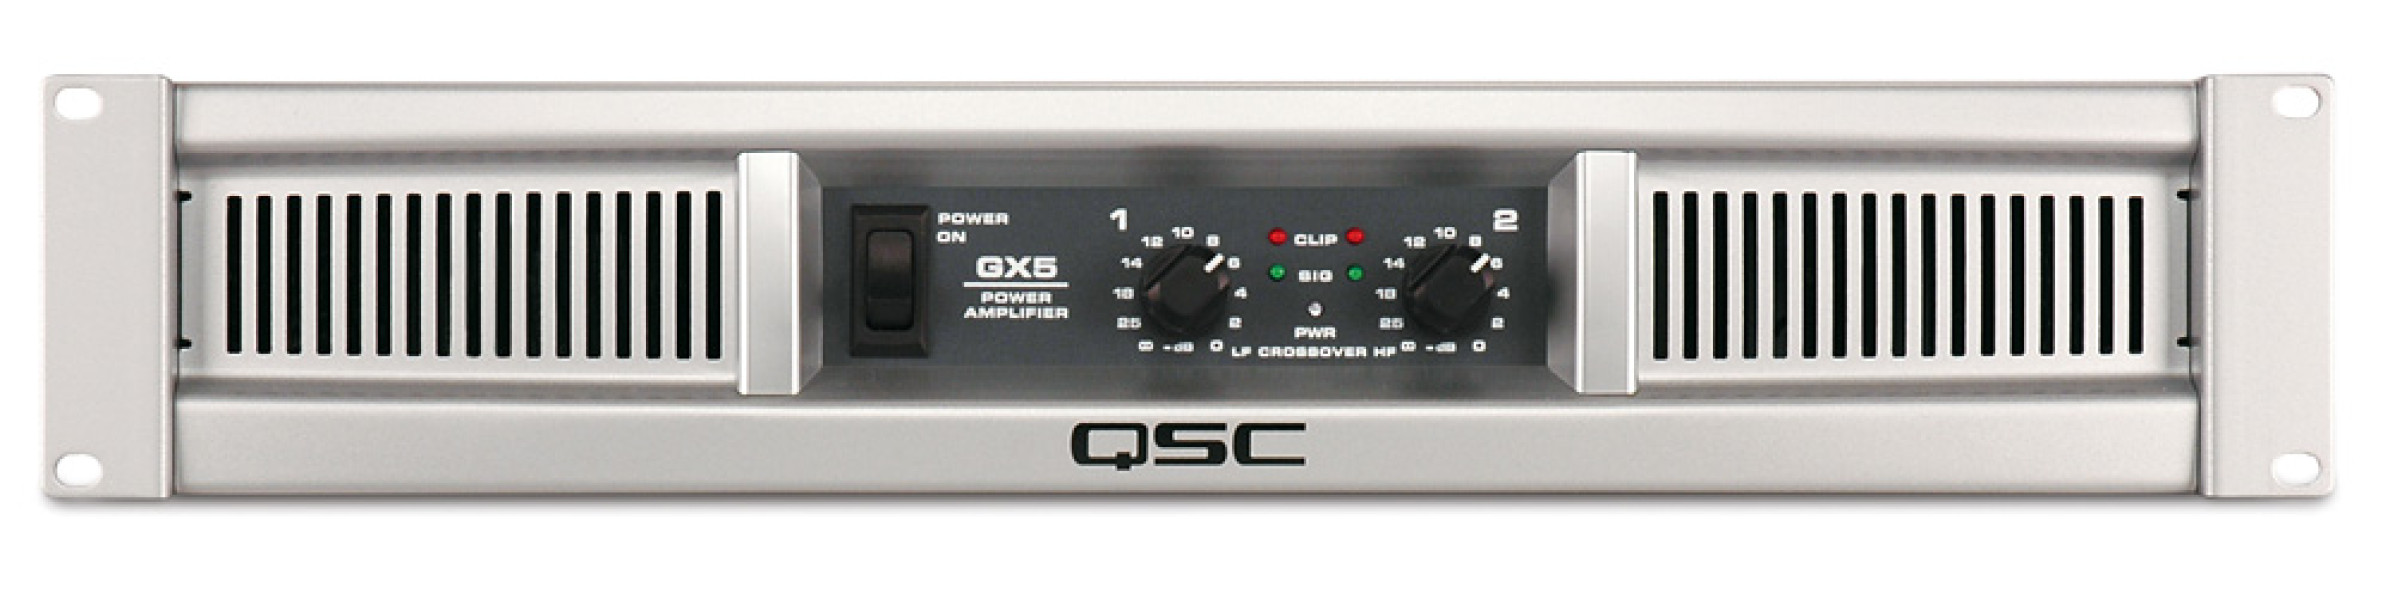 QSC GX5